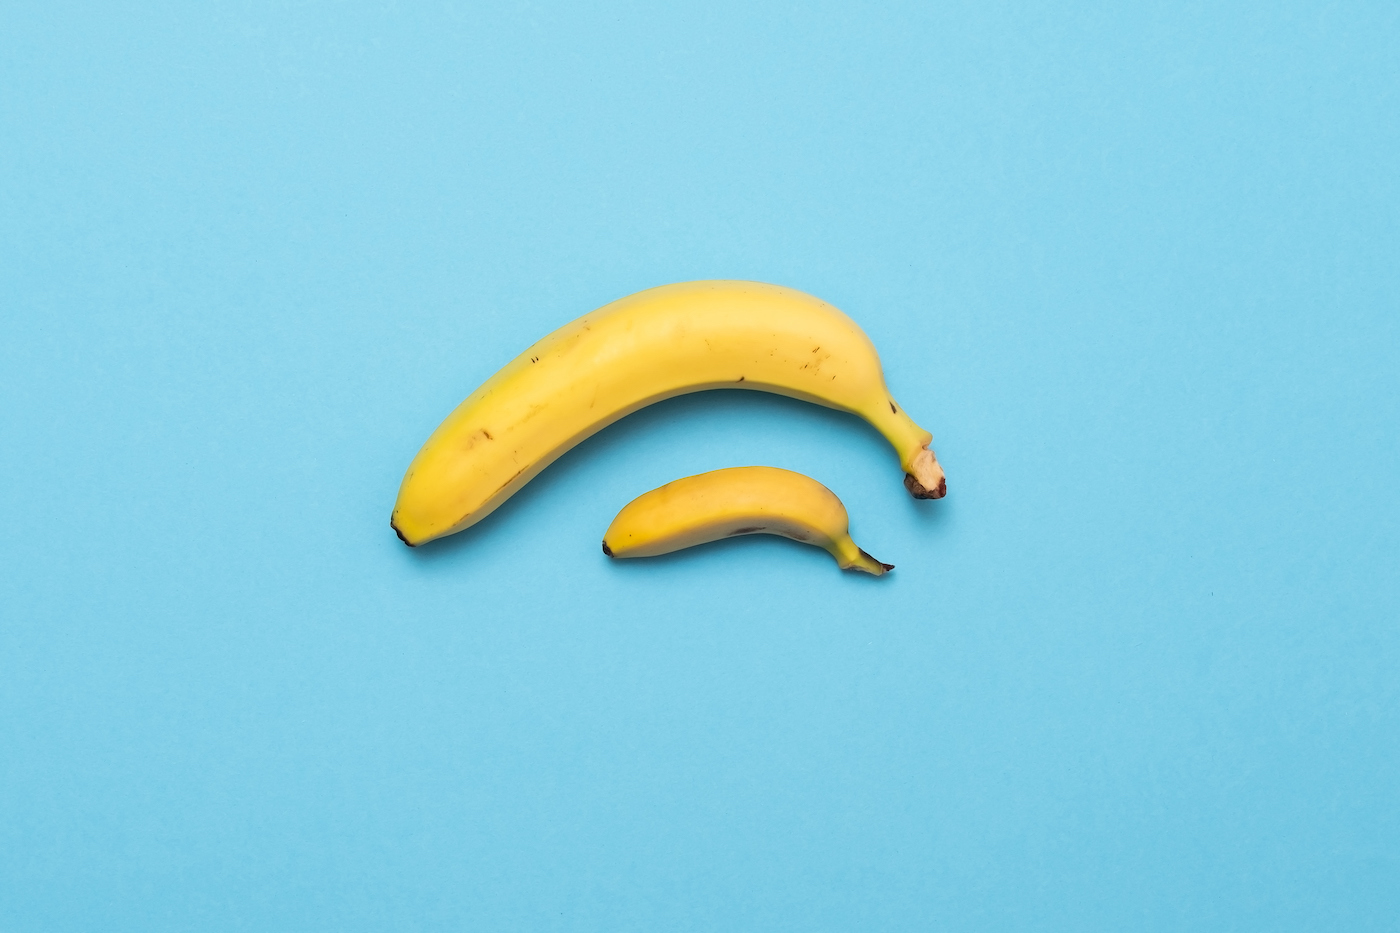 bébé banane comparer la taille avec la banane sur fond bleu.  concept de taille de pénis